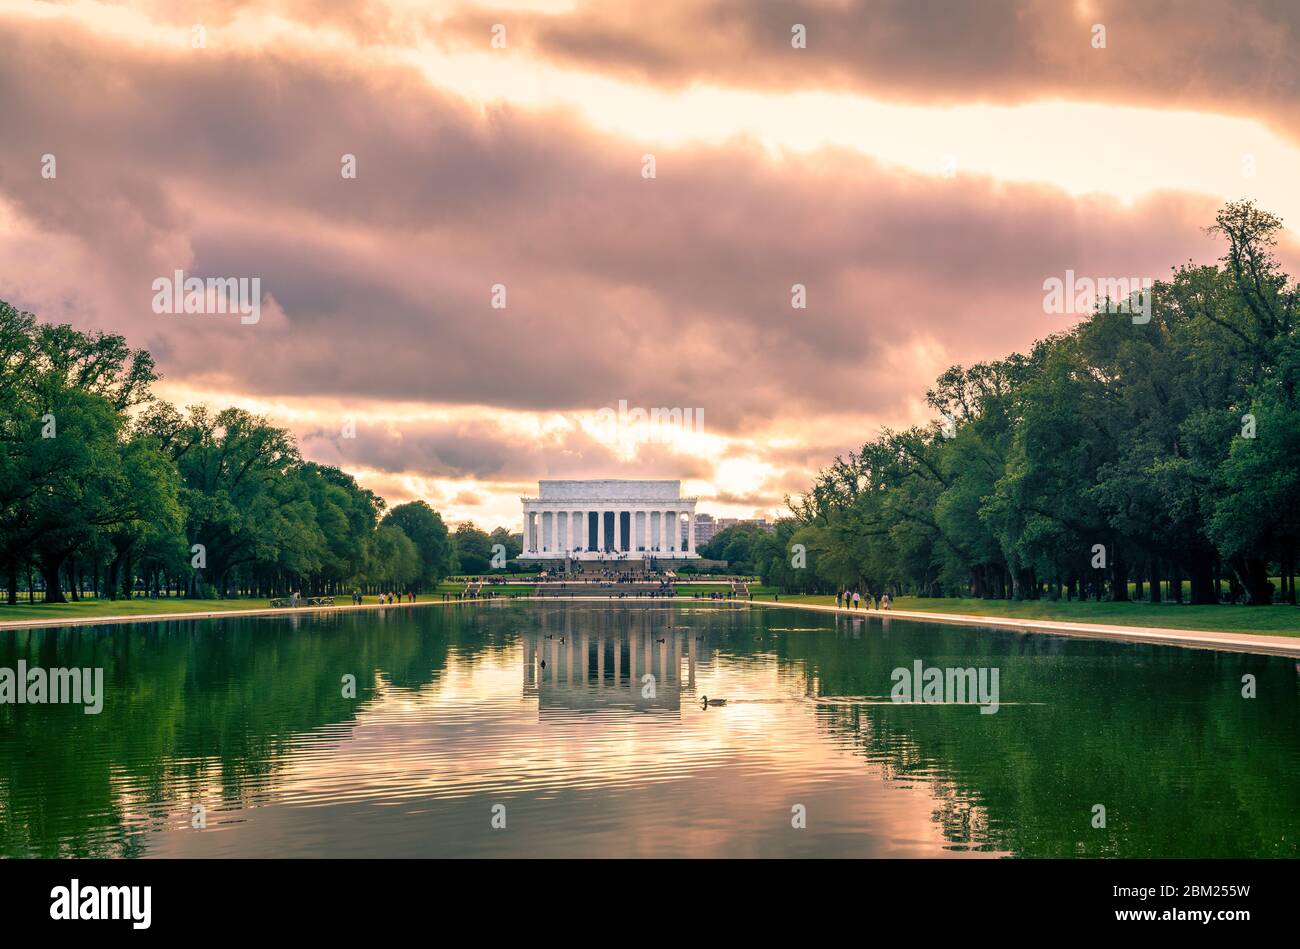 El Lincon Memorial y Reflecting Pool al atardecer en Washington, DC, Estados Unidos. Foto de stock